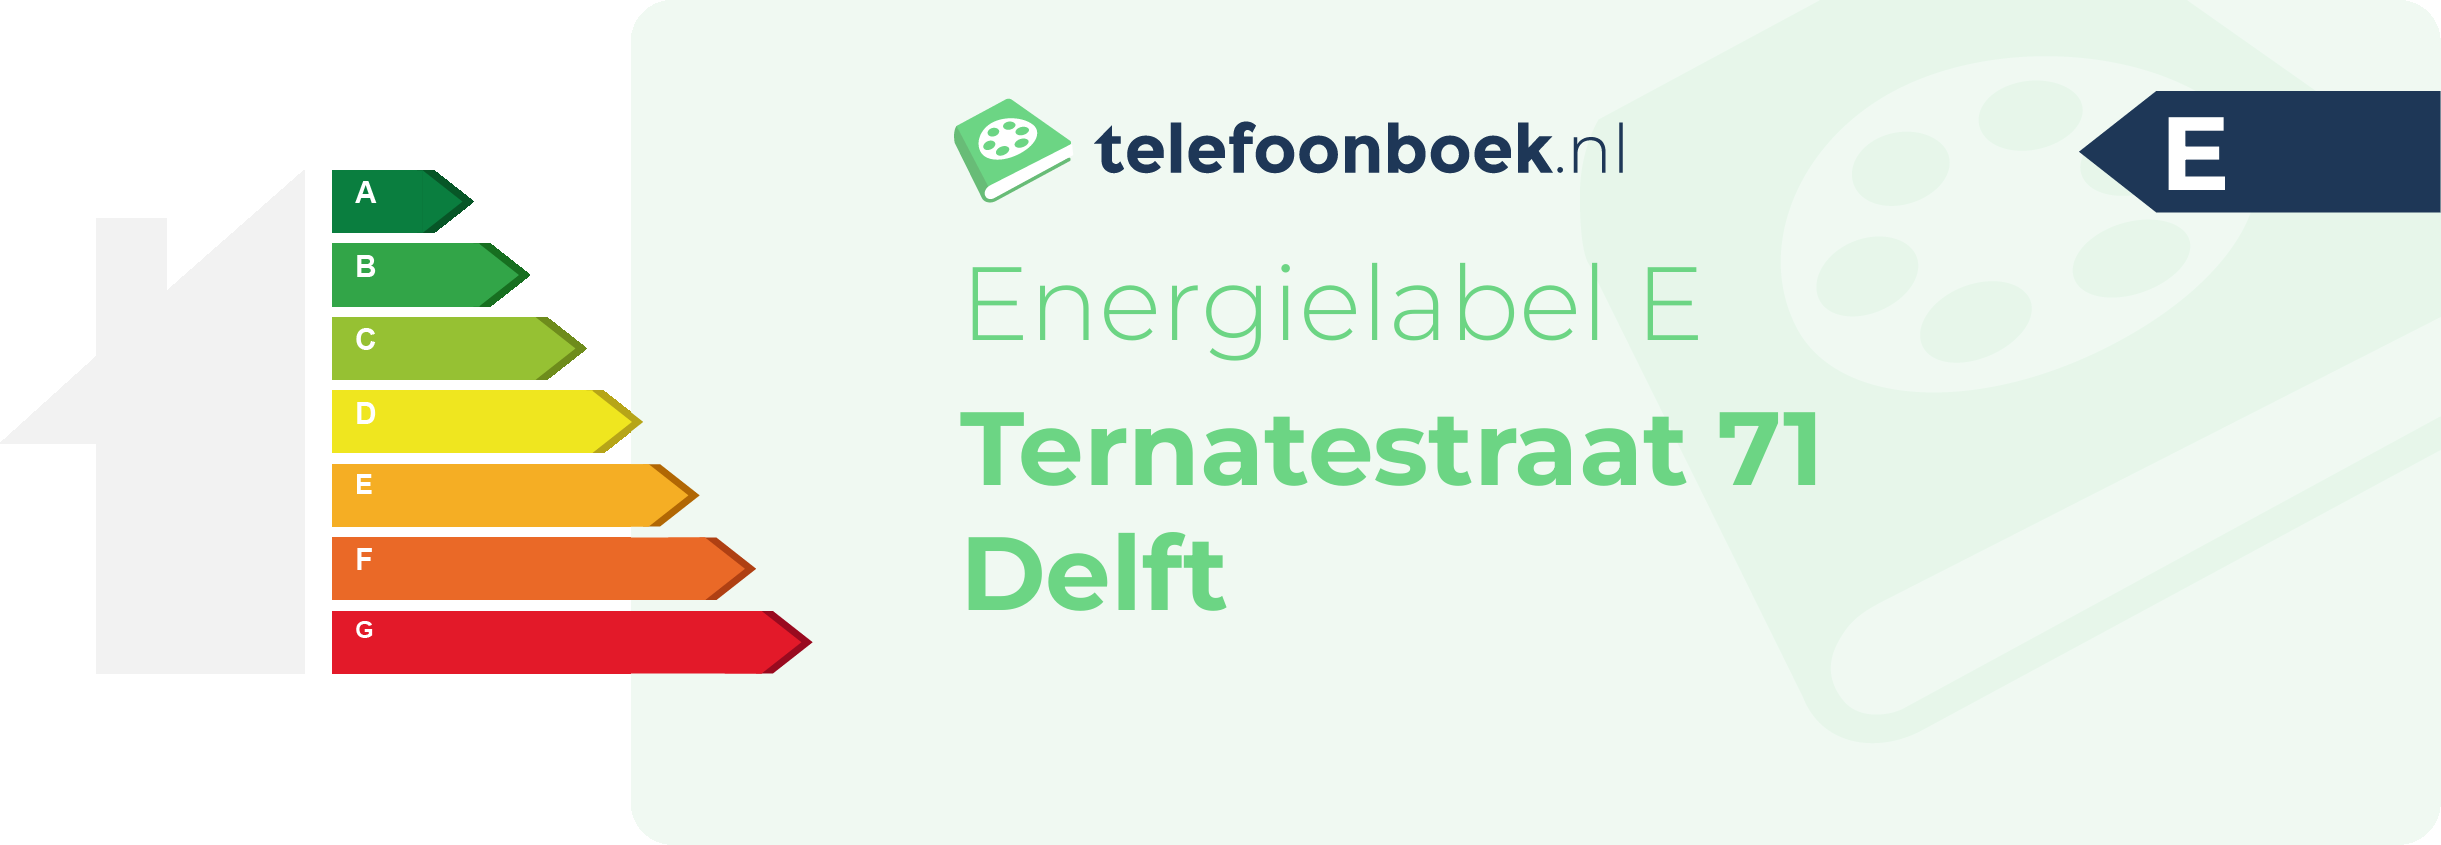 Energielabel Ternatestraat 71 Delft